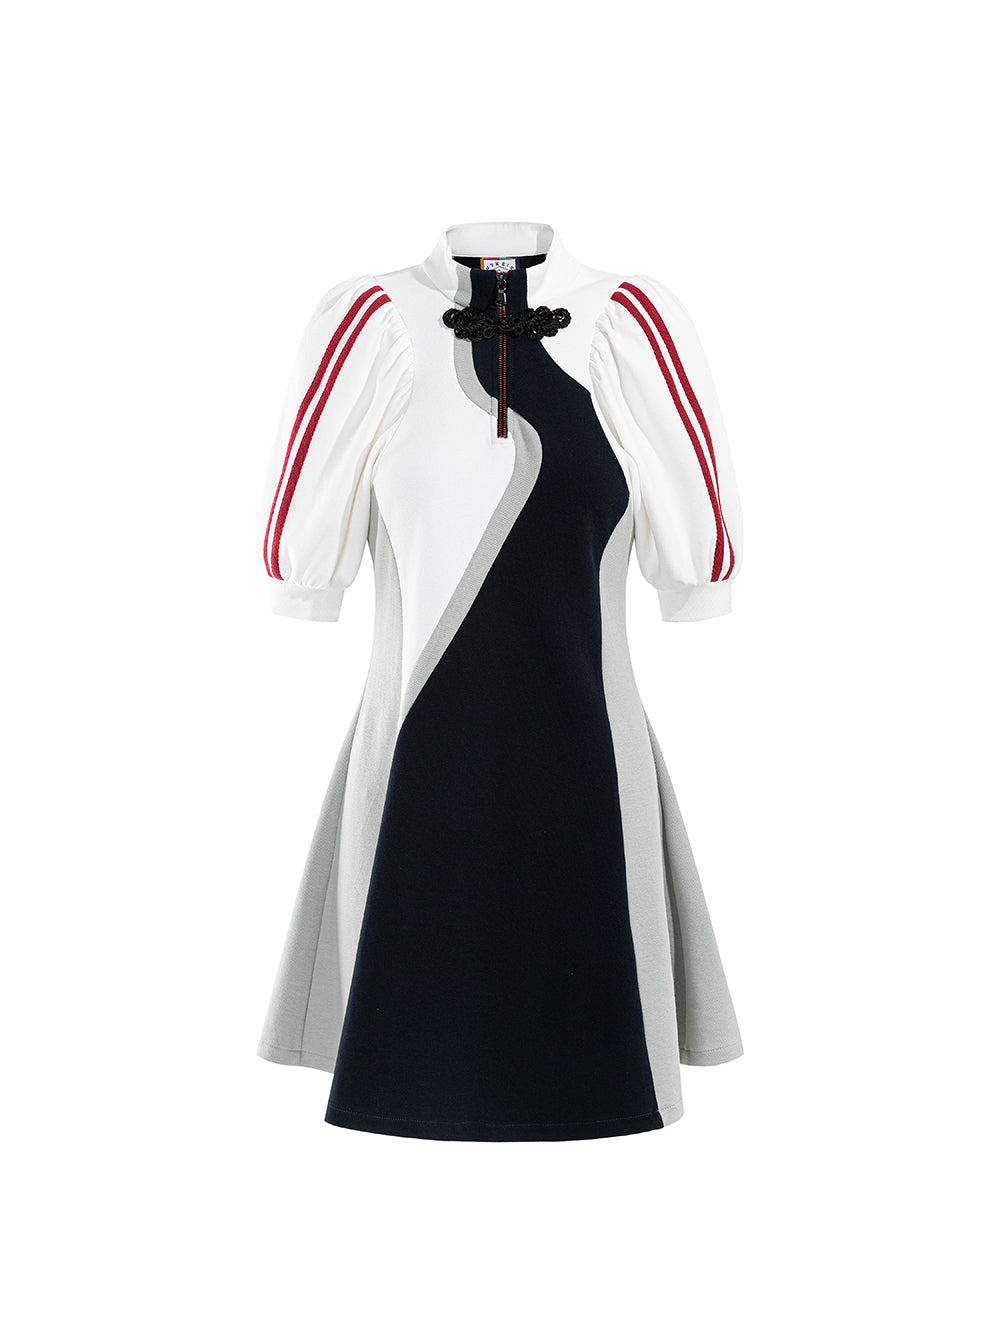 MUKZIN Sports Style Puff Sleeve Stitching Casual Dress